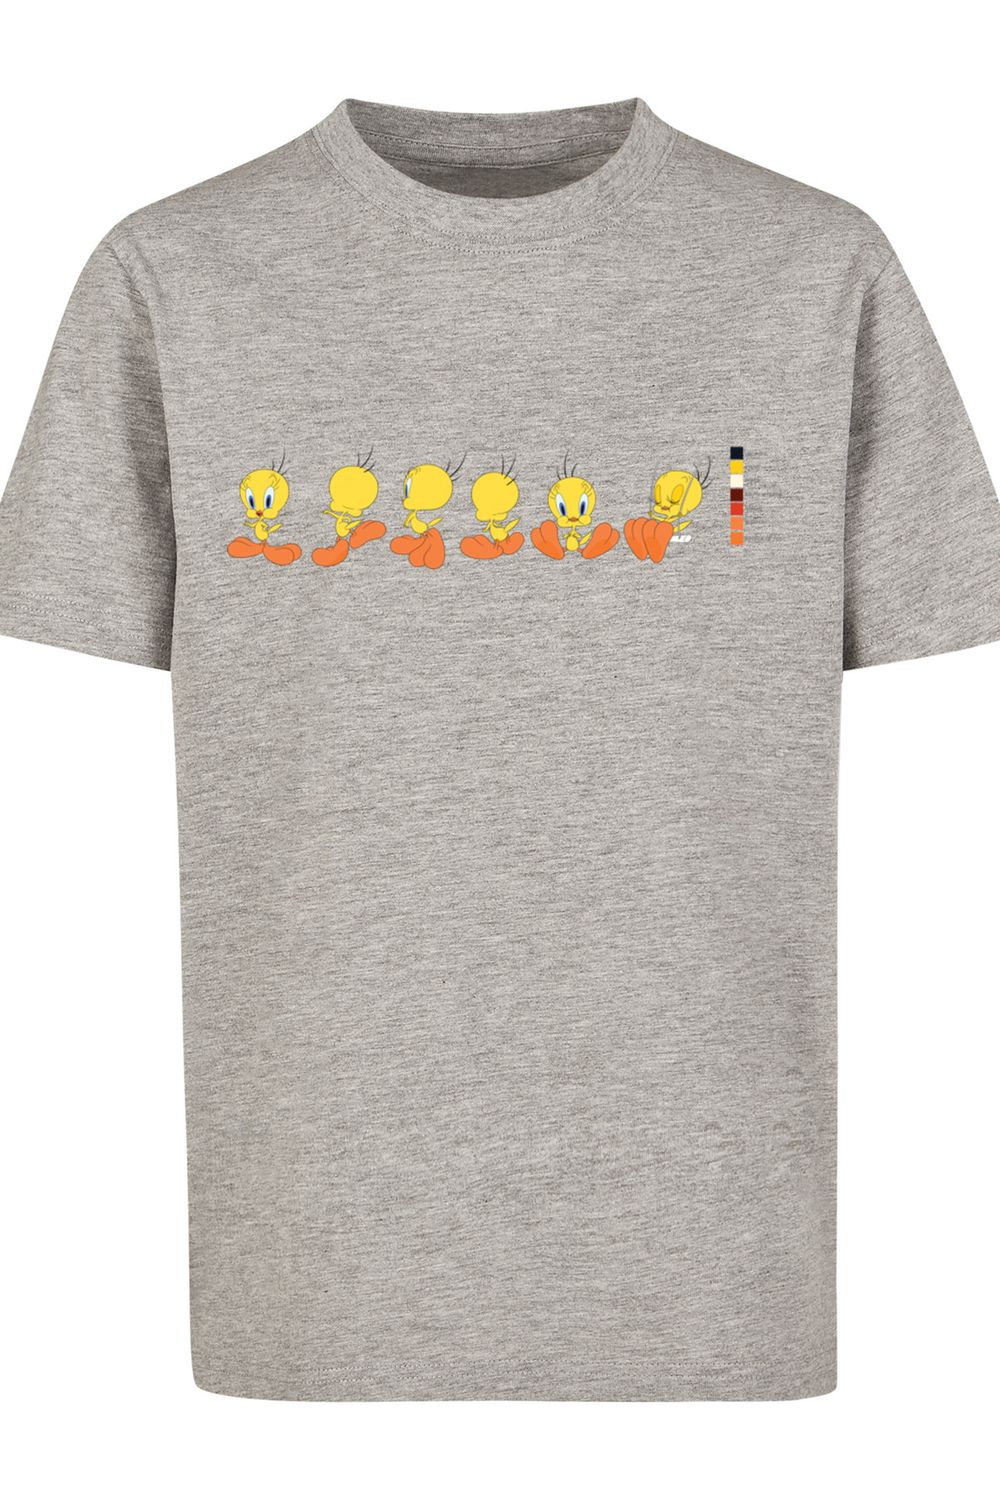 Tweety mit Kinder Tunes Farbcode-WHT T-Shirt - Basic Looney Trendyol Pie F4NT4STIC Kids